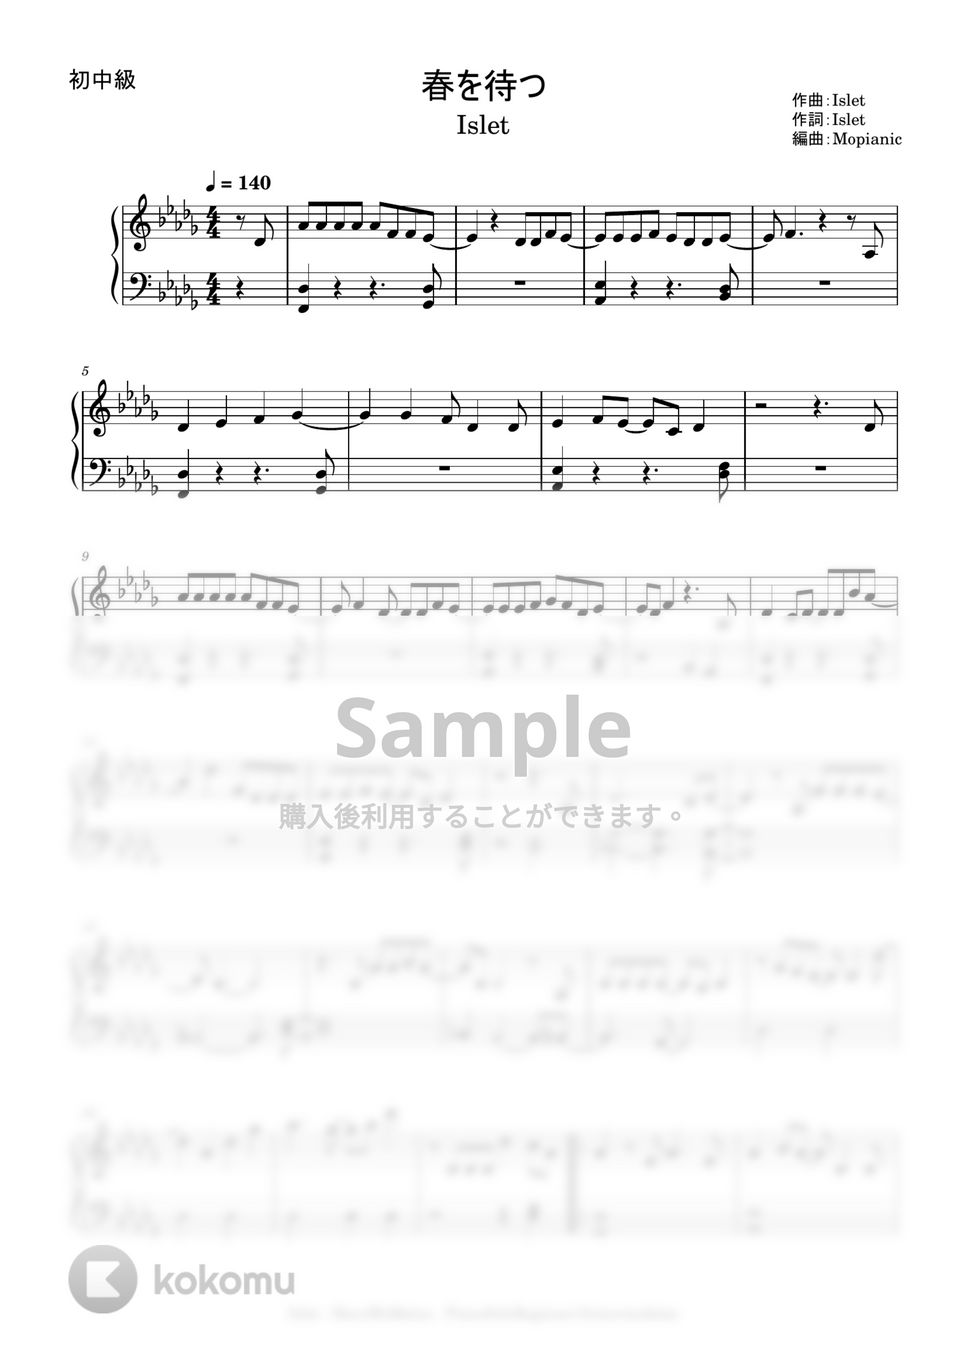 Islet - Haru wo matsu (beginner to intermediate, piano) by Mopianic